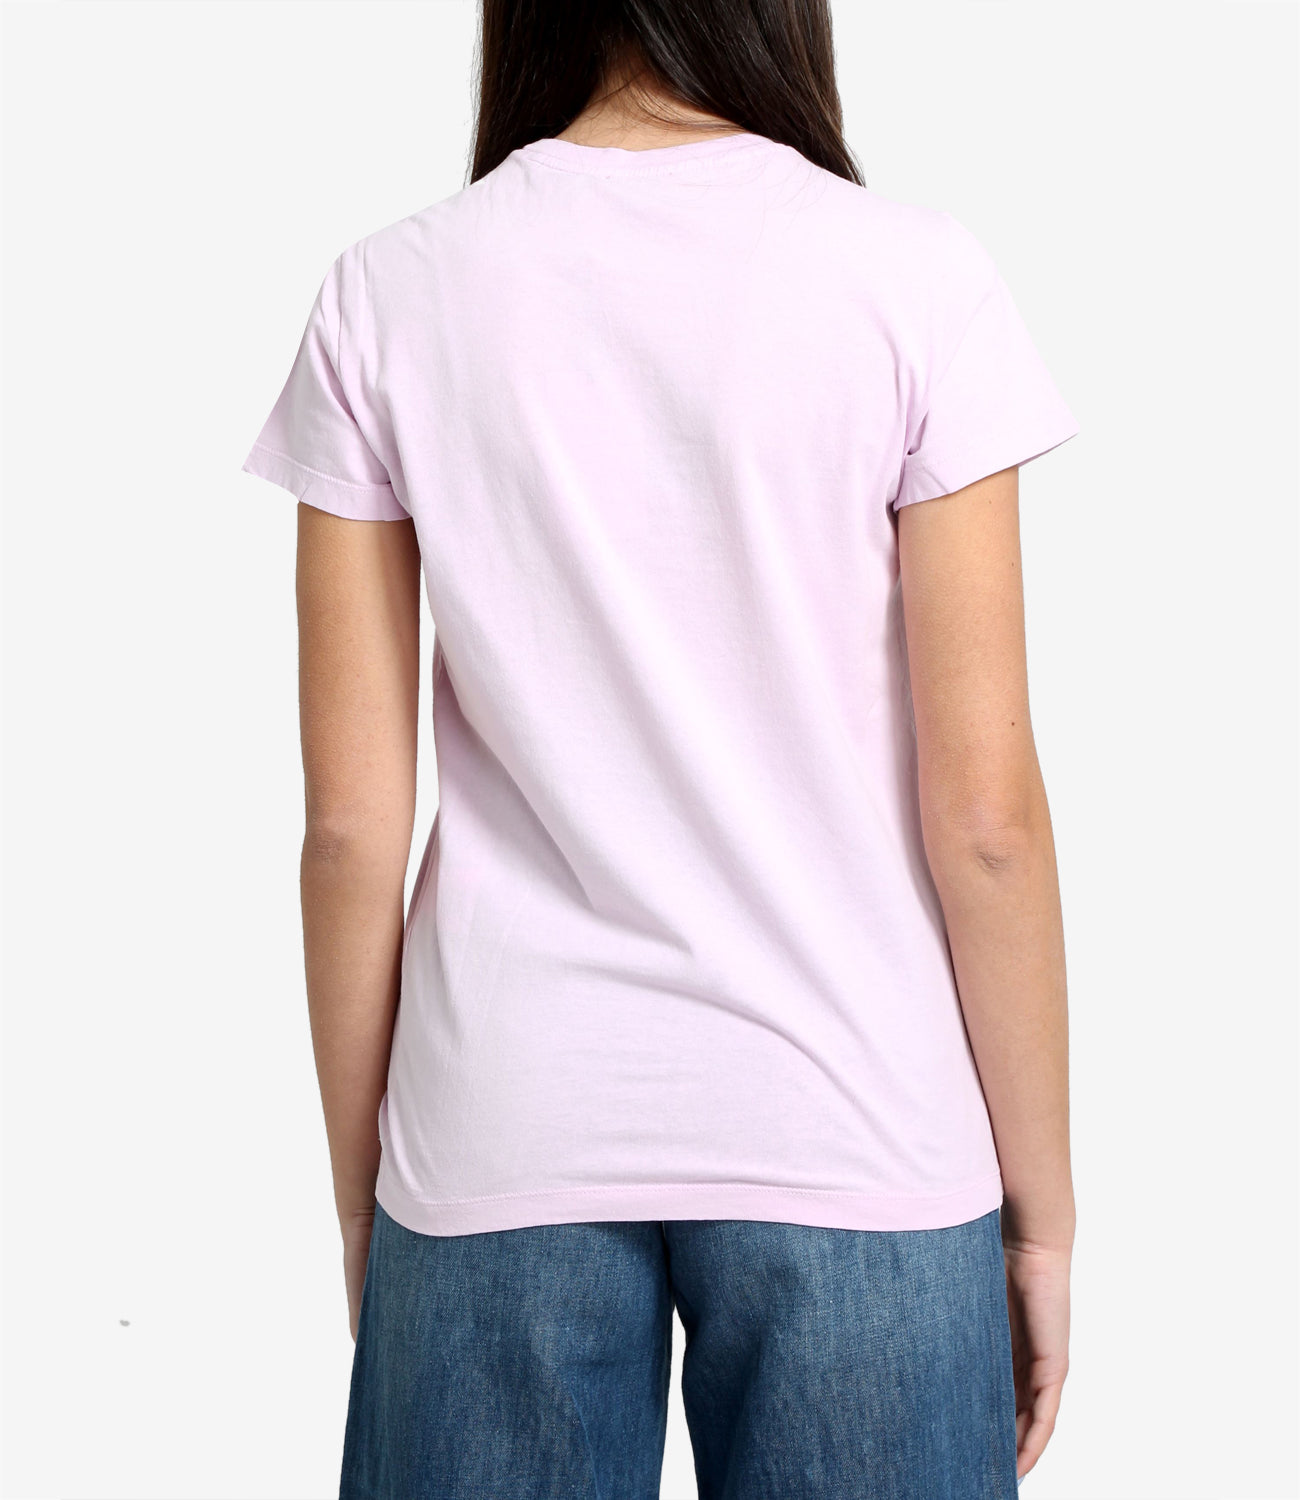 N 21 | Pink T-Shirt